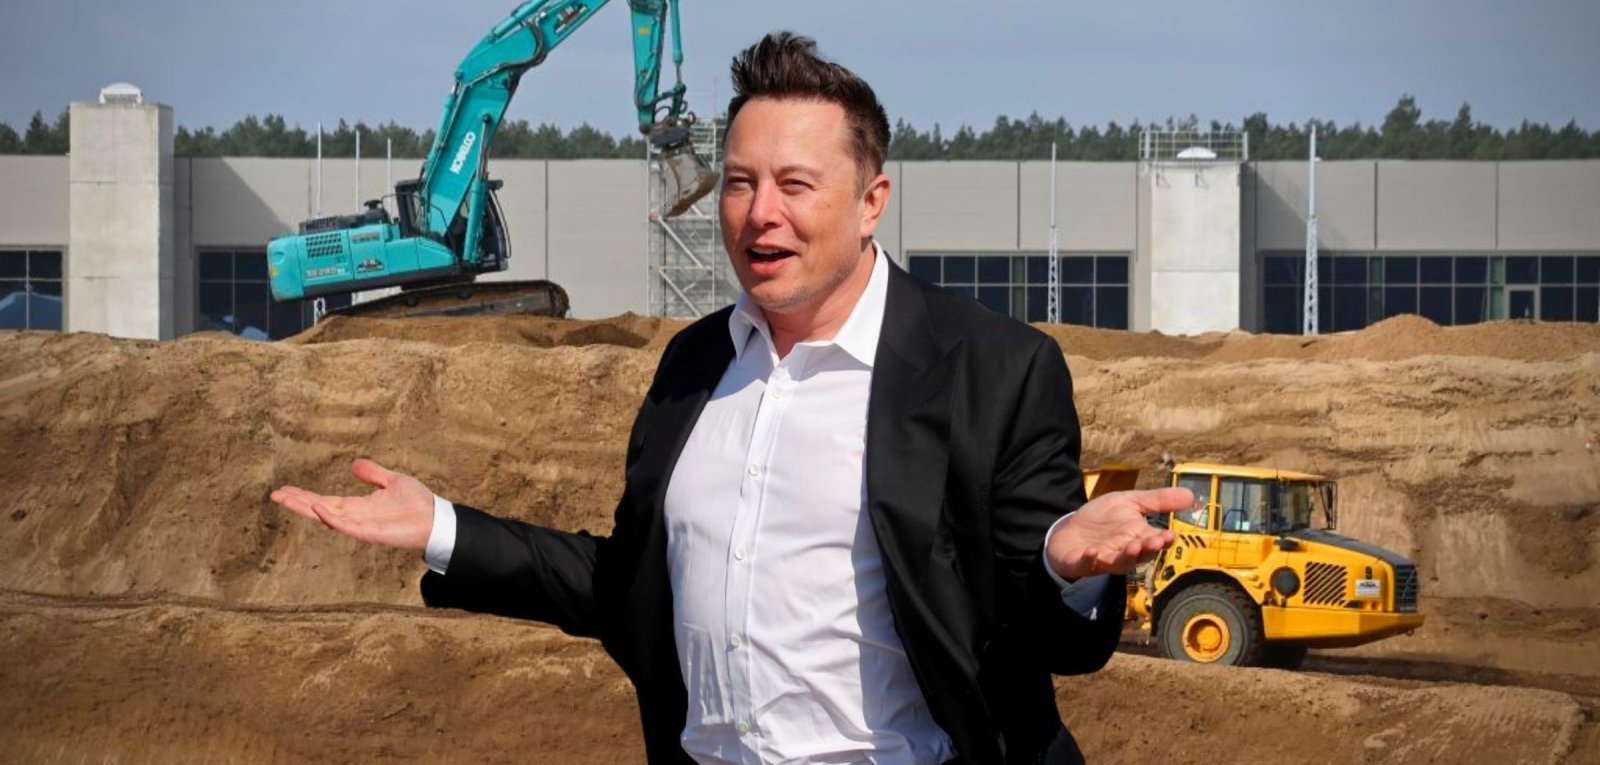 Reizgas & Explosionsgefahr: Steht Teslas Gigafactory auf der Kippe?